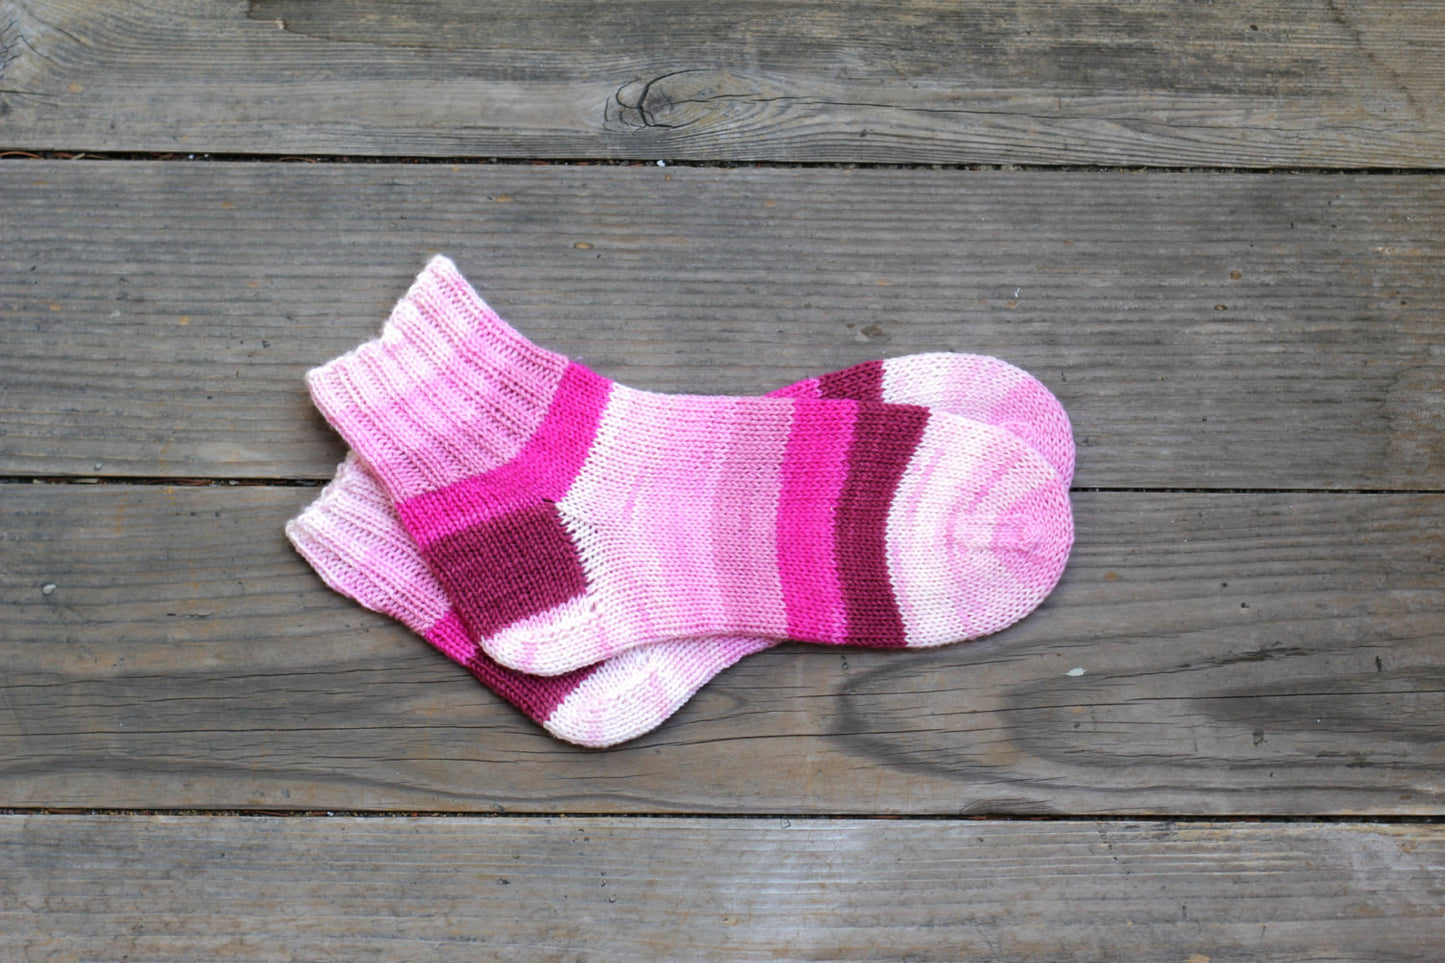 Pink striped socks